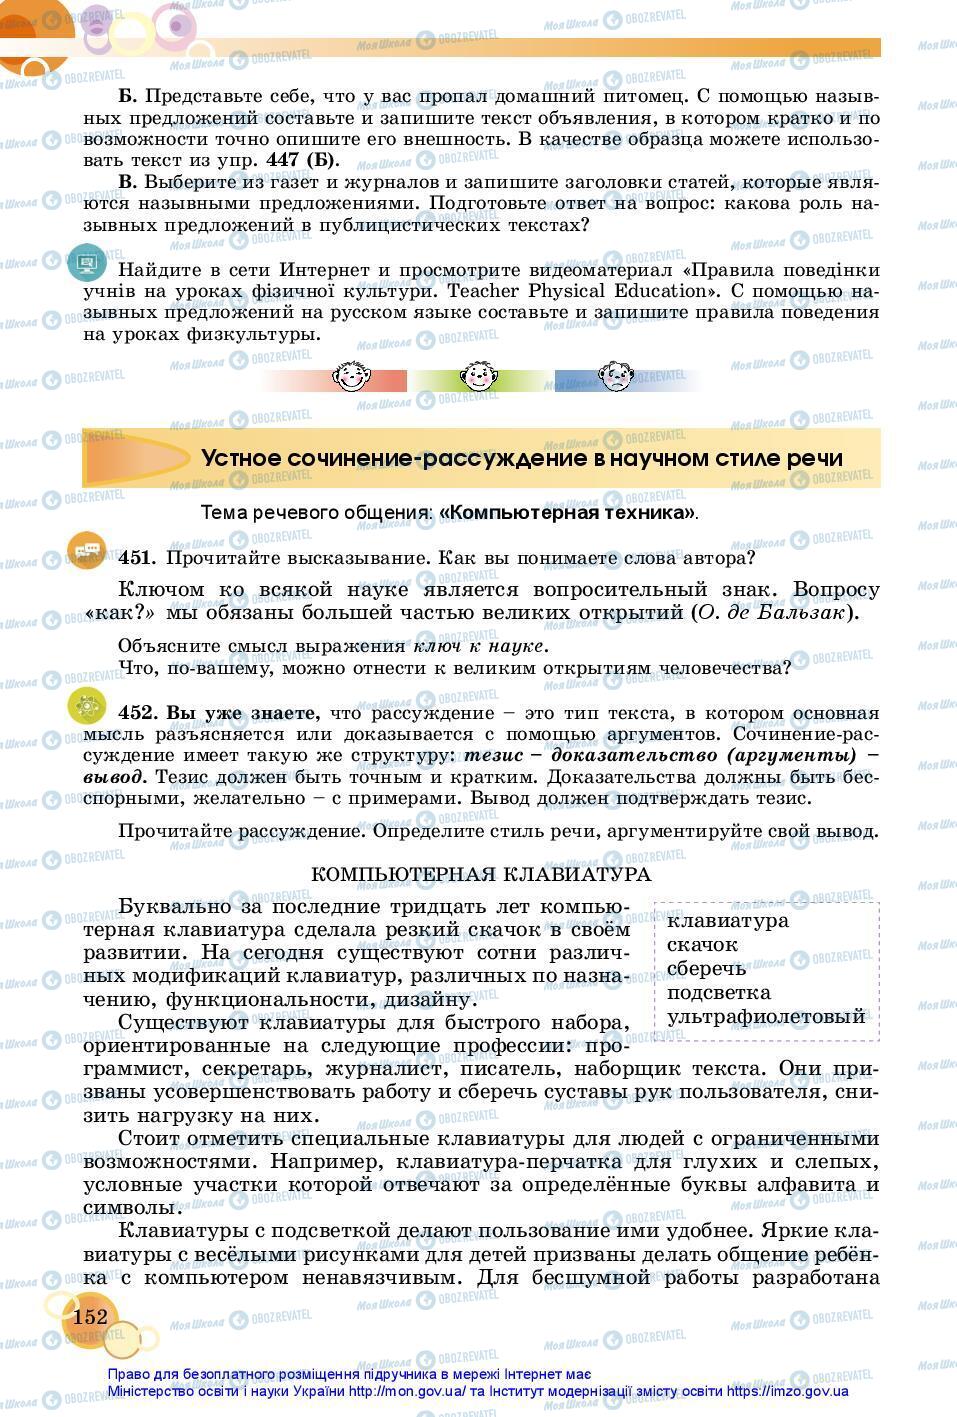 Учебники Русский язык 7 класс страница 152